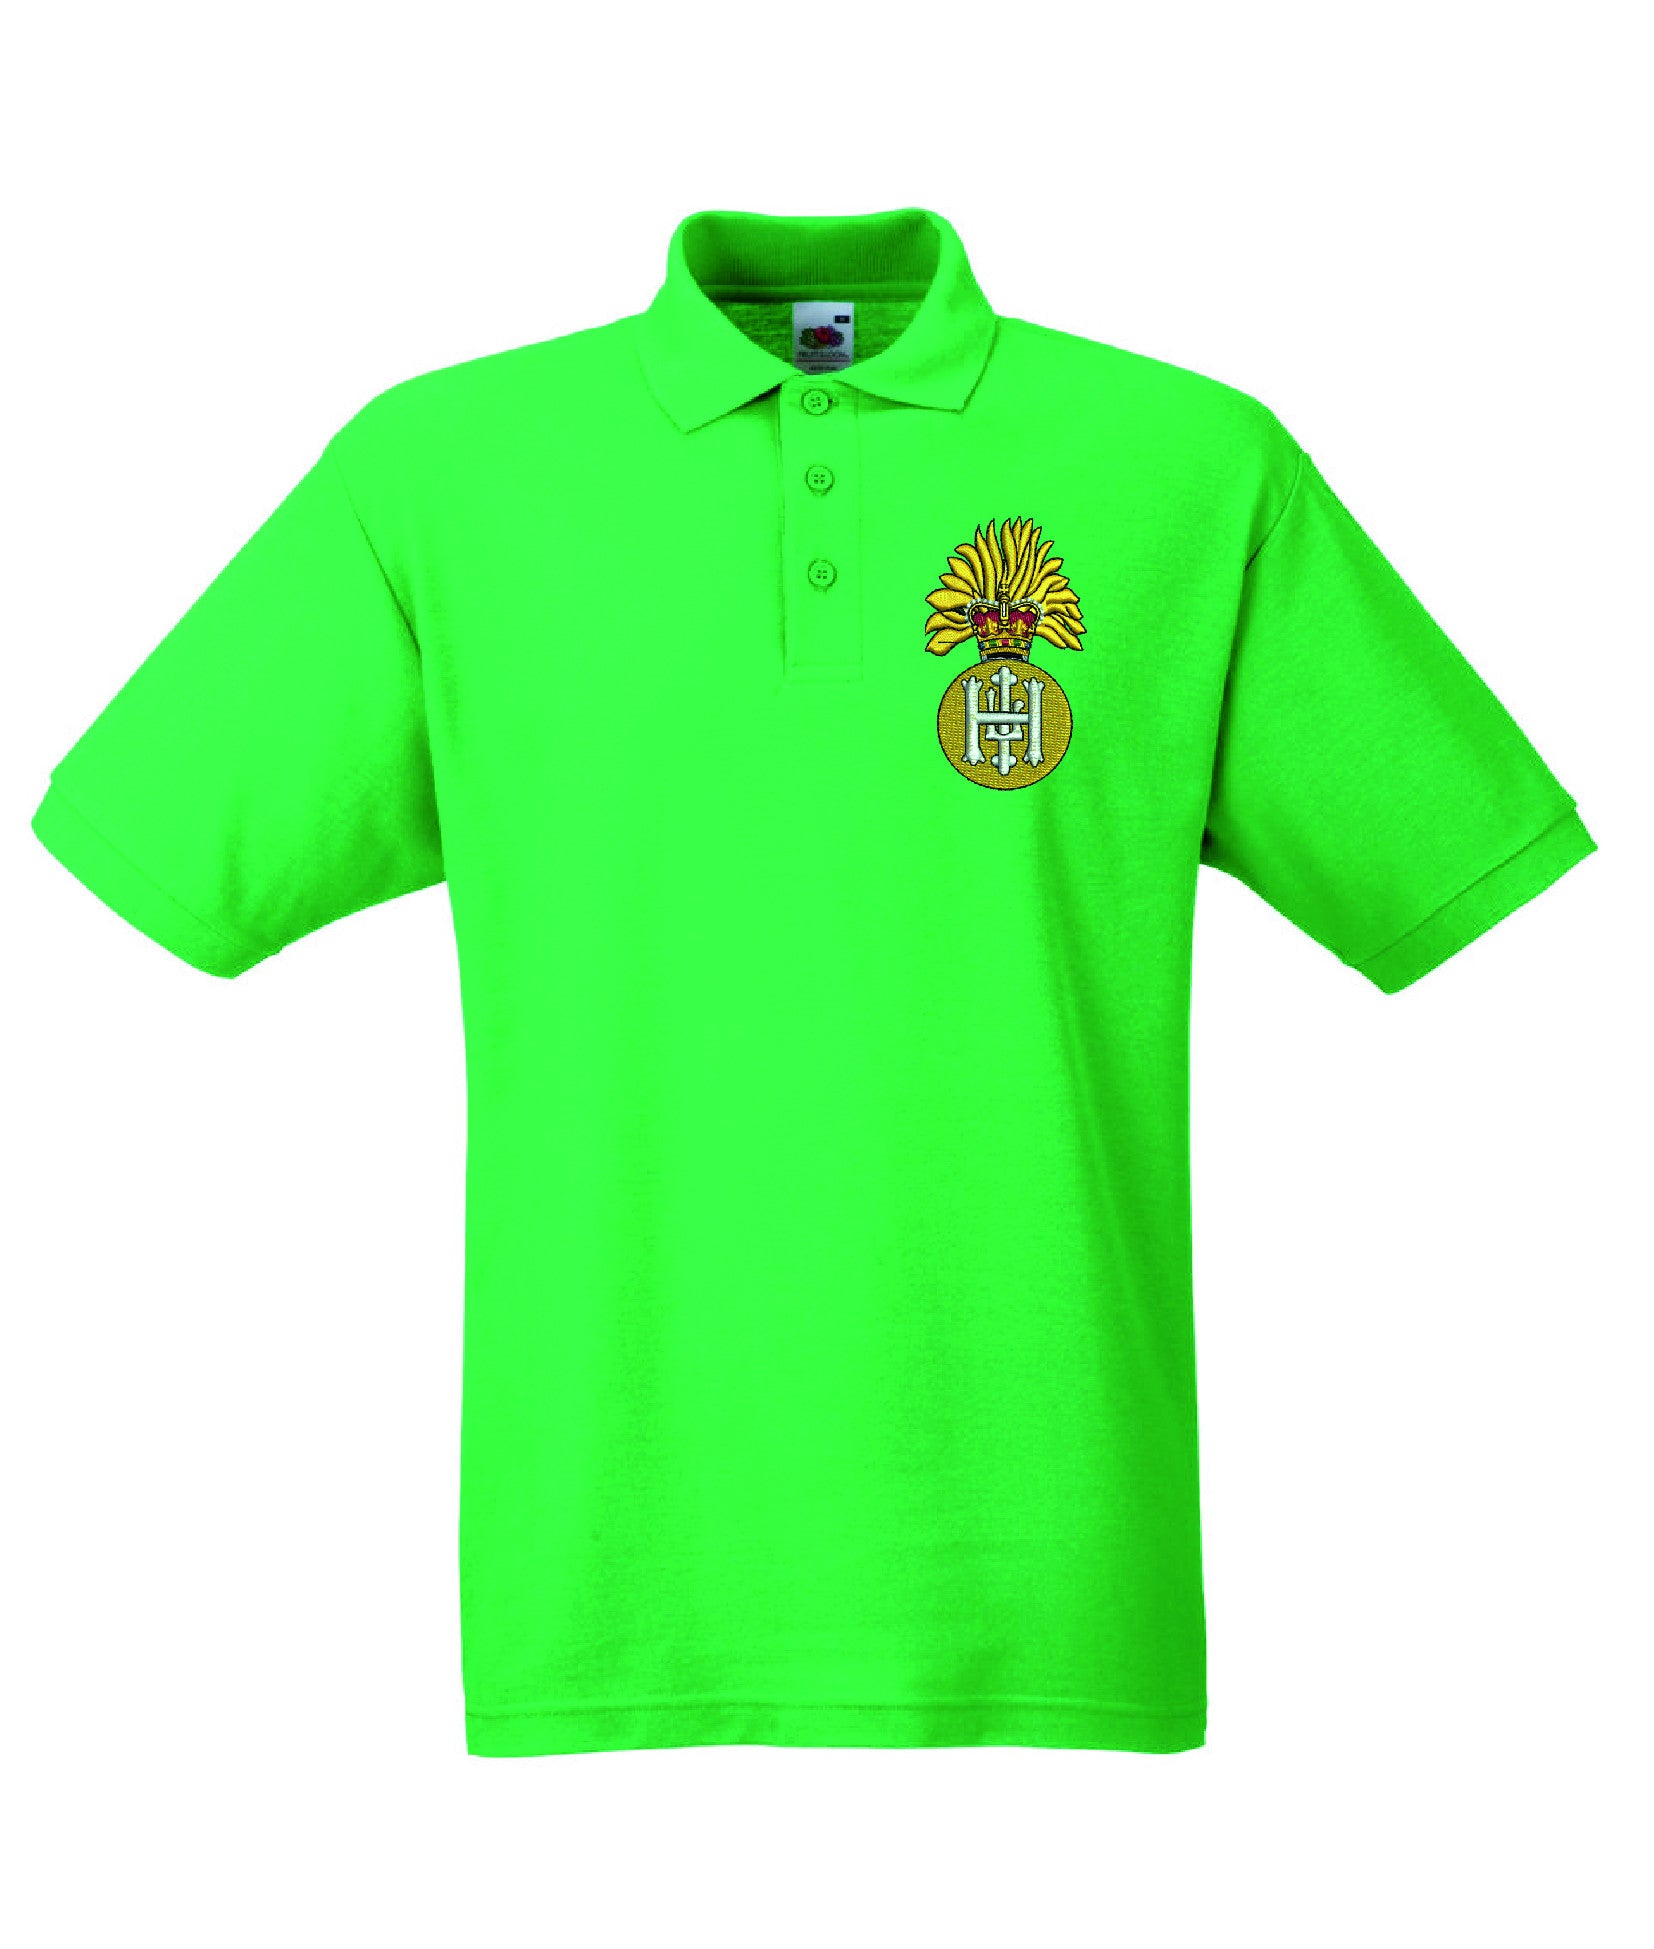 Royal Highland Fusiliers Polo Shirt